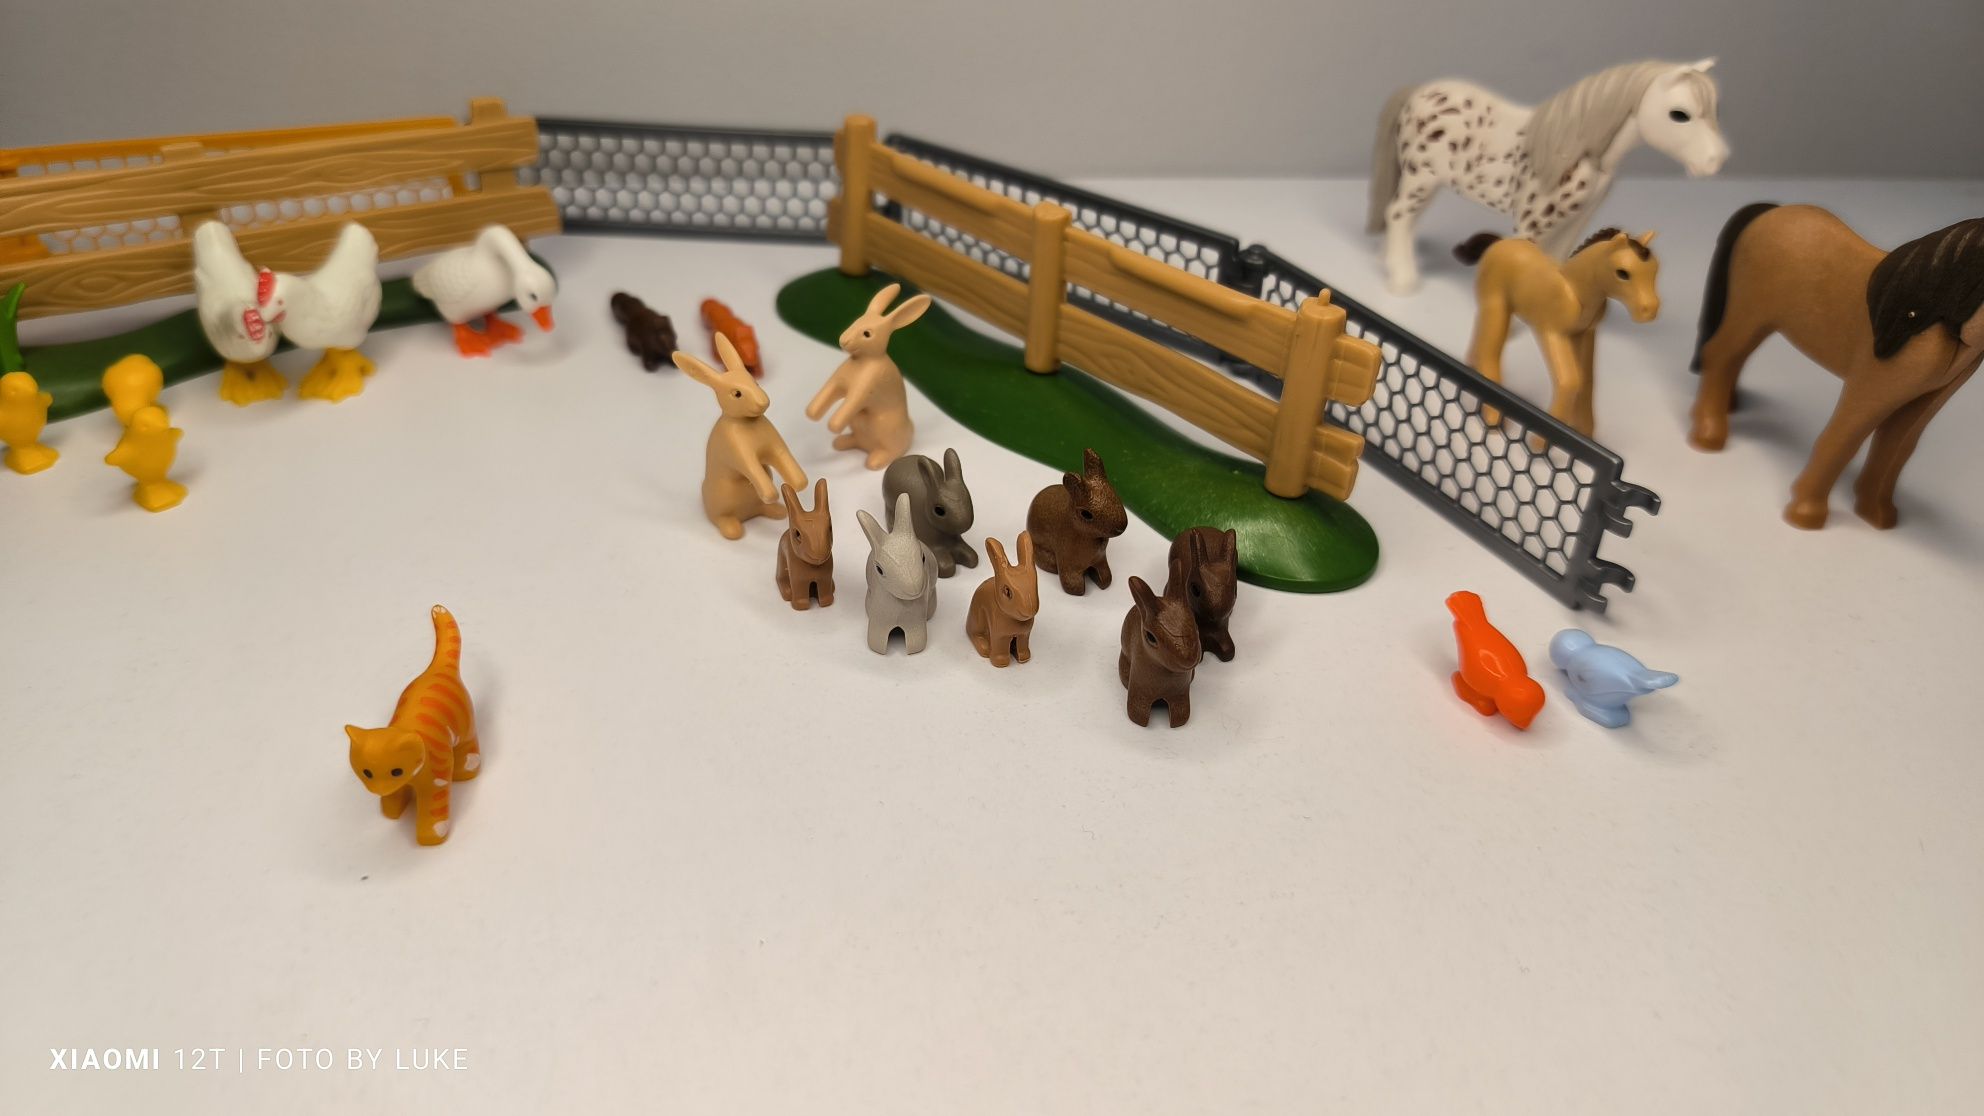 Playmobil zwierzęta chodowlane domowe pies kot koń kura króliki gęś